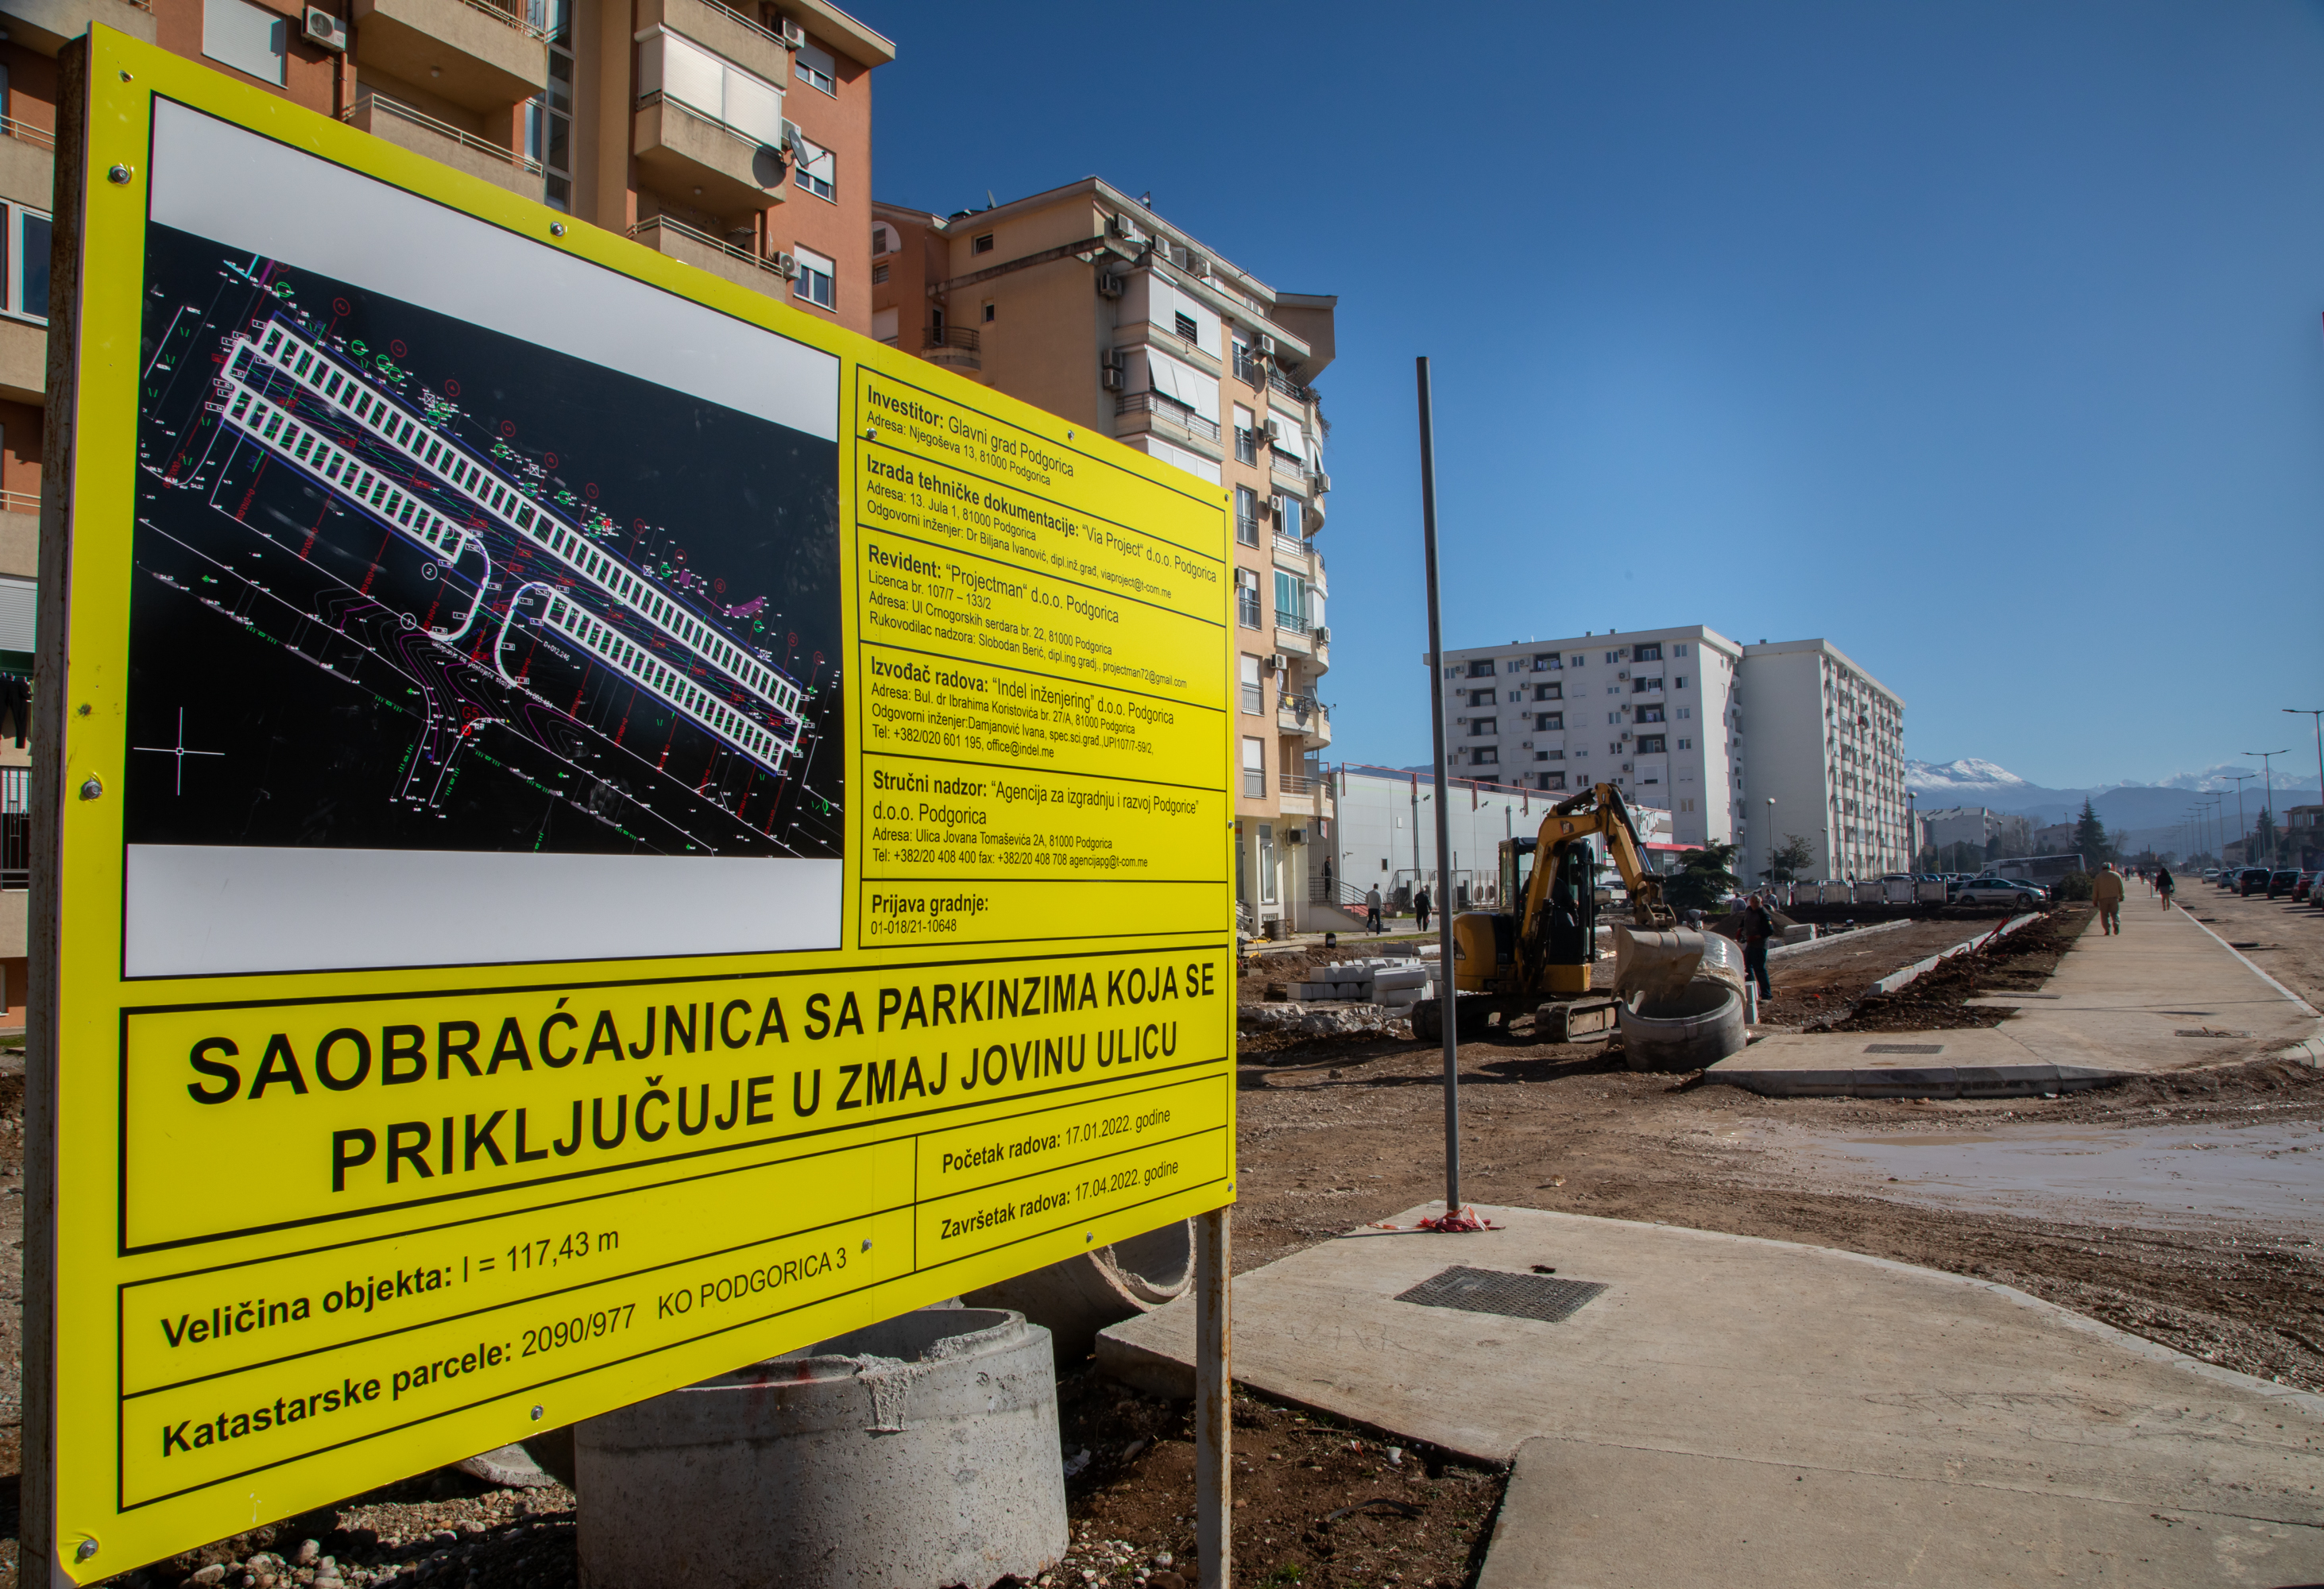 Vuković na Starom aerodromu; Uskoro završetak izgradnje novog parka, preko 80 parking mjesta i sanacije saobraćajnica